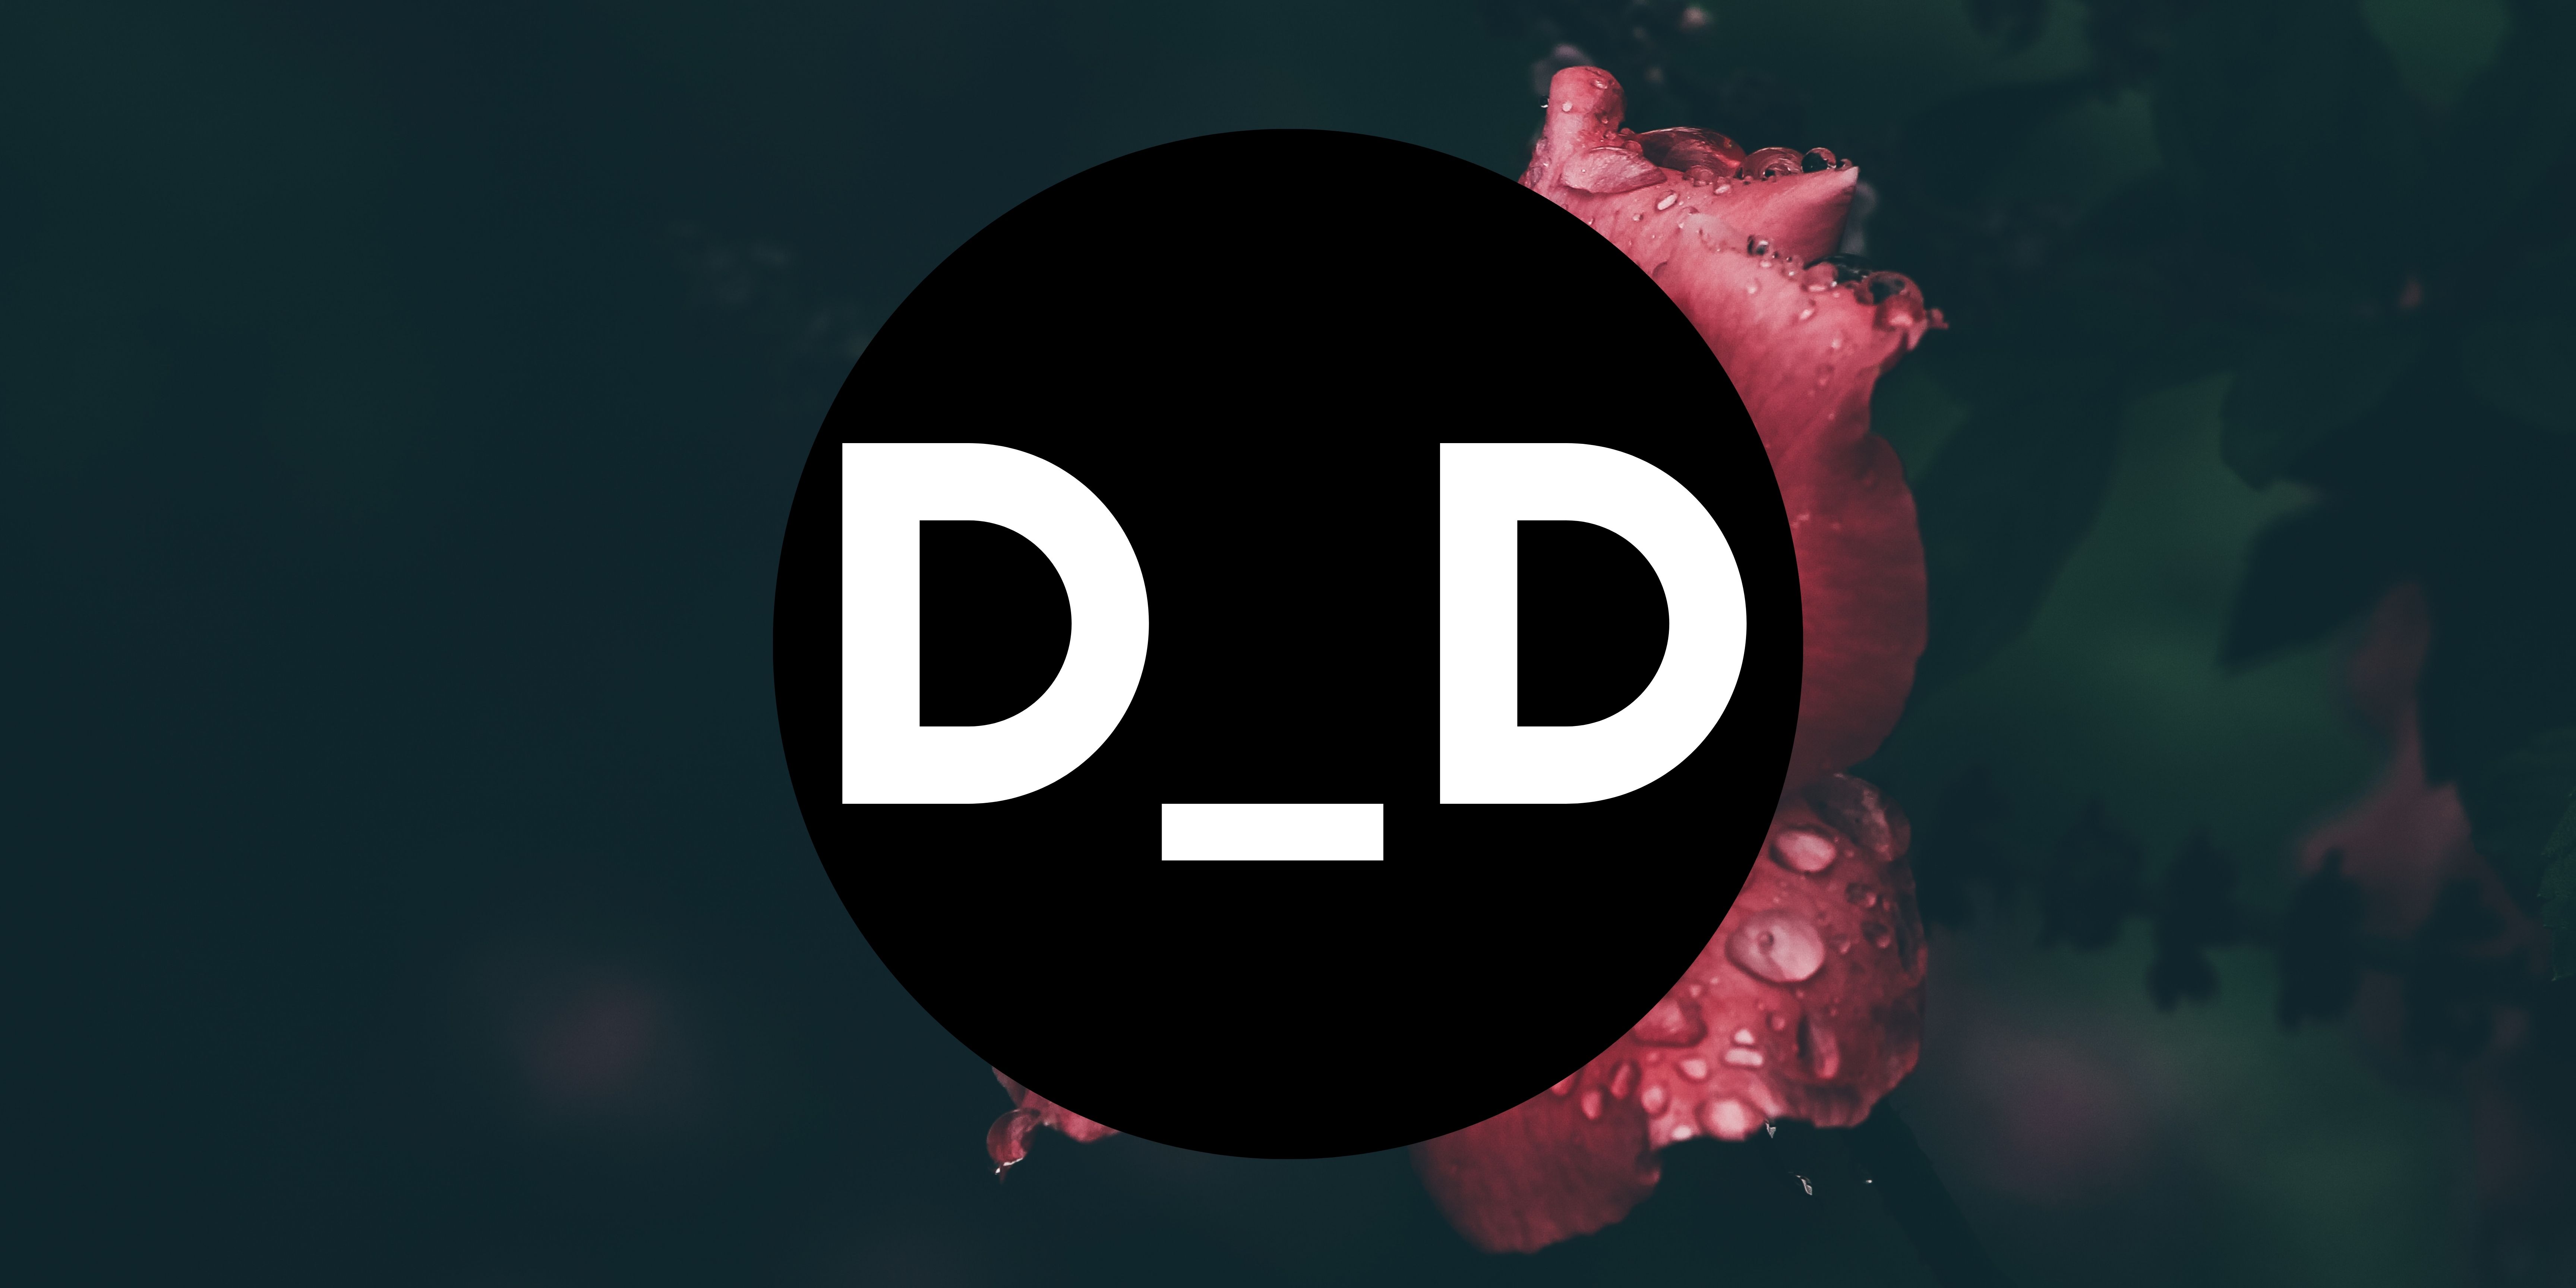 Developer DAO: Badge Migration (How-To Guide) - 💬 General - Developer DAO